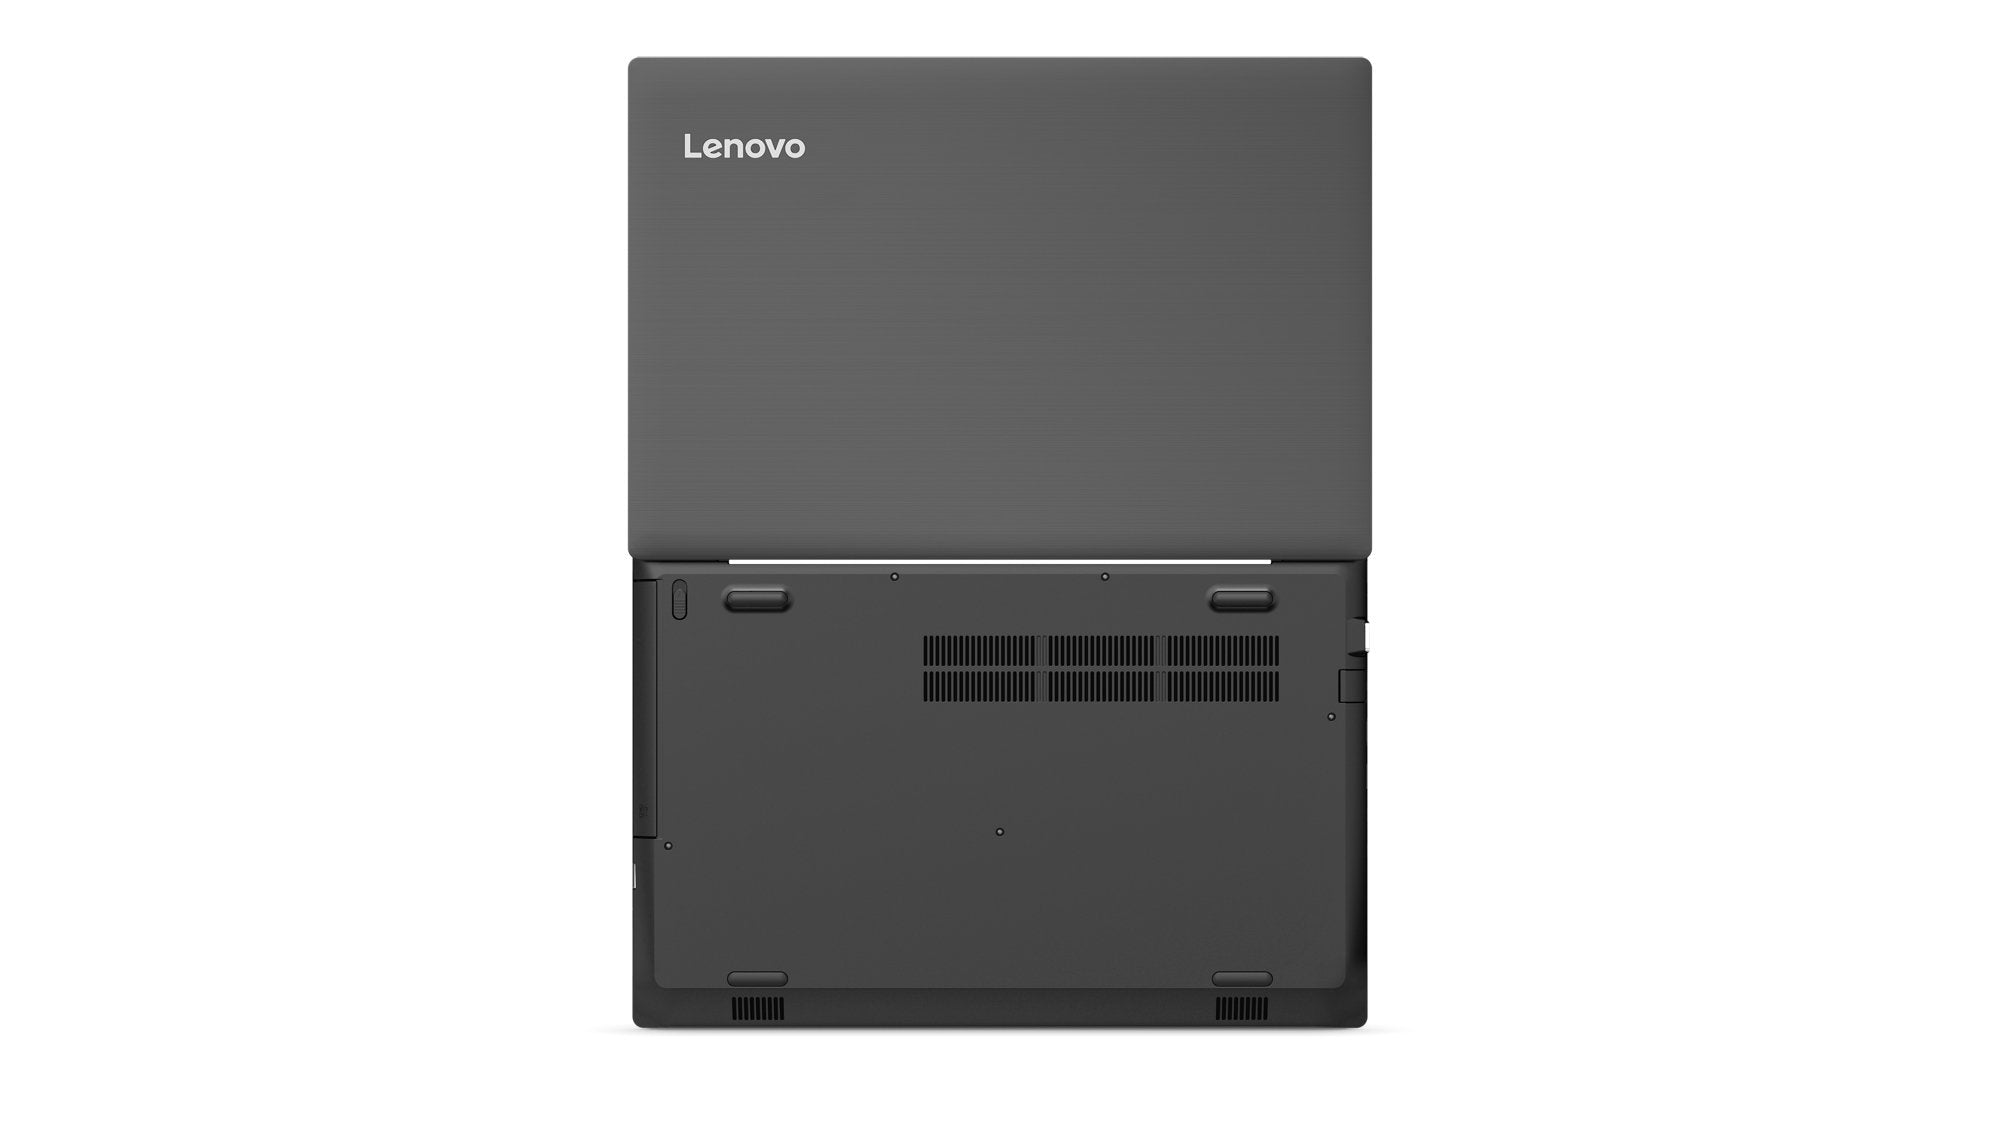 Lenovo V330-15IKB (81AX00ARUK) 15.6" Full HD Laptop Intel Core i5-8250U Processor, 8GB RAM, 256GB SSD, Windows 10 Pro - Grey